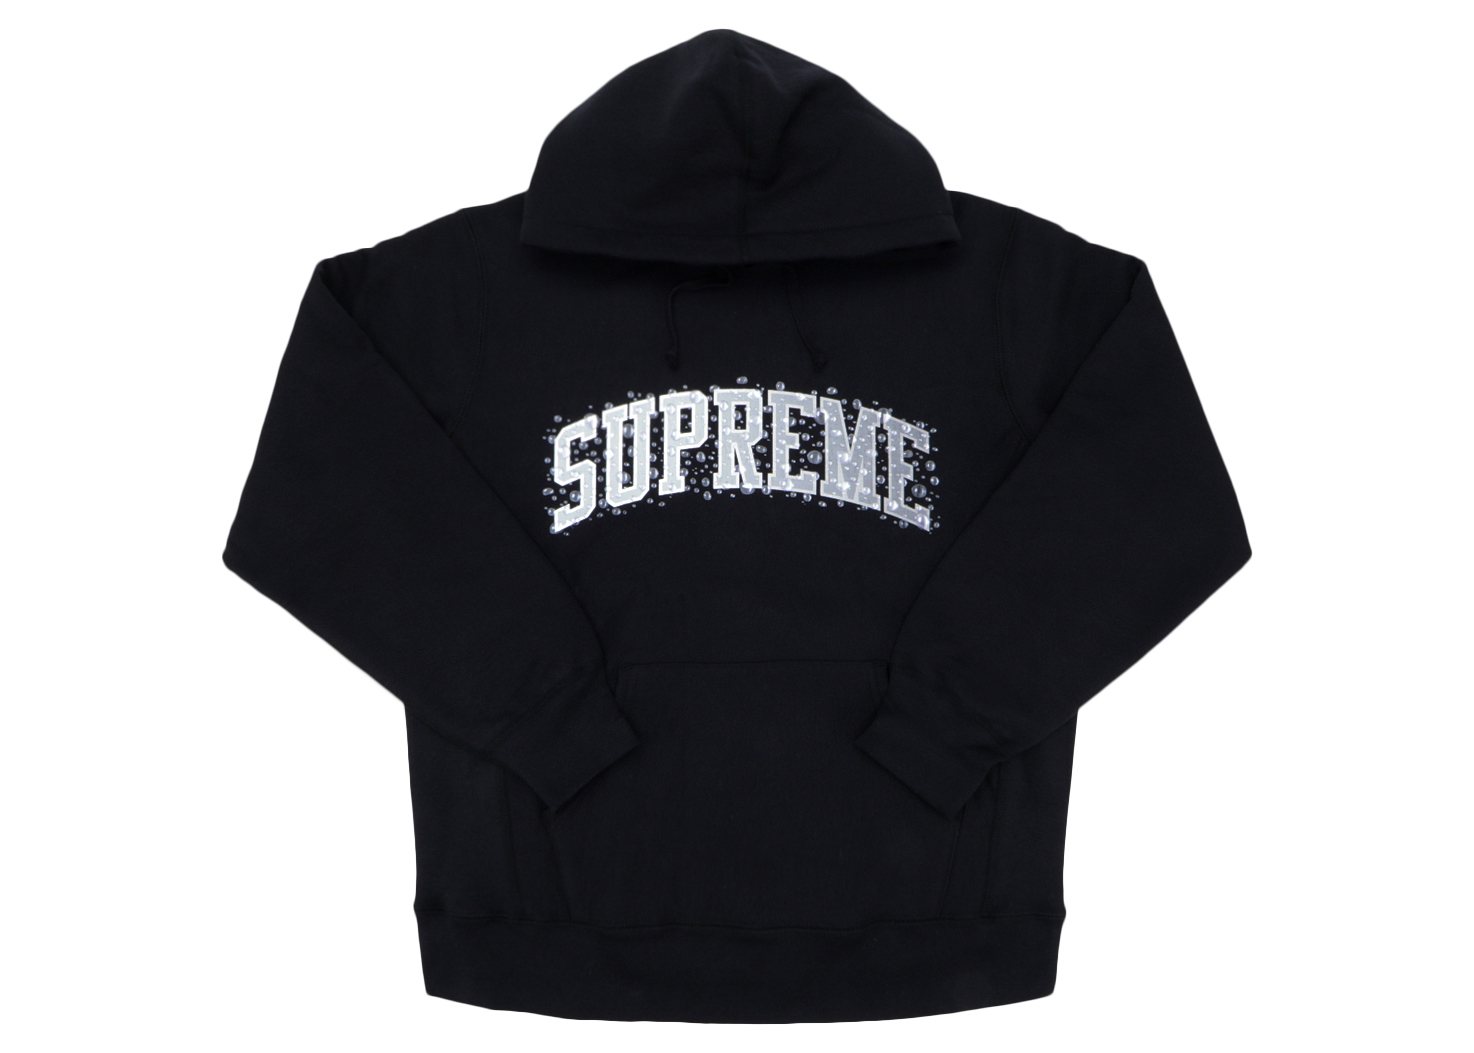 Supreme Water Arc Hooded Sweatshirt Black